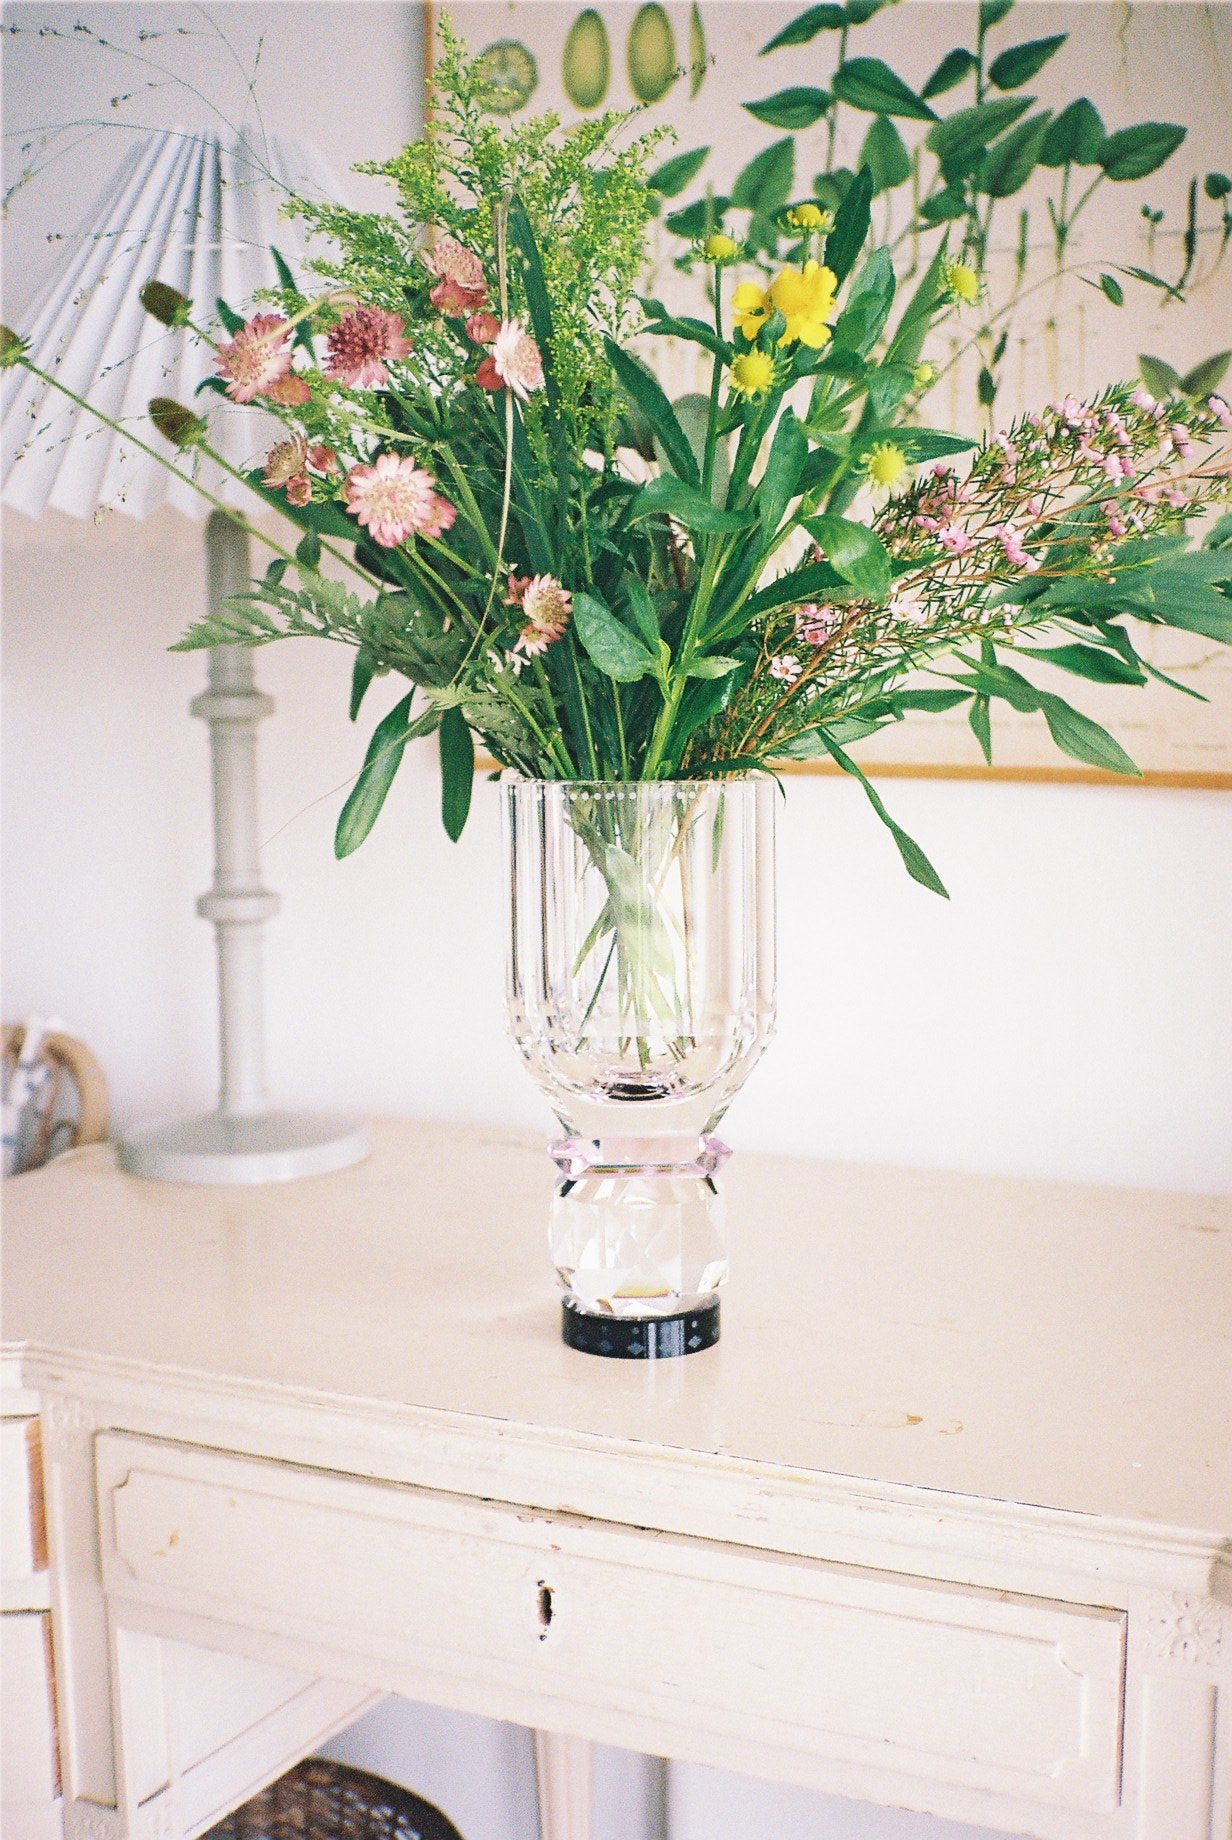 Vase i klar, lyserød og sort krystal med blomster i, stående på hvidt bord med lampe og kunst i baggrunden.